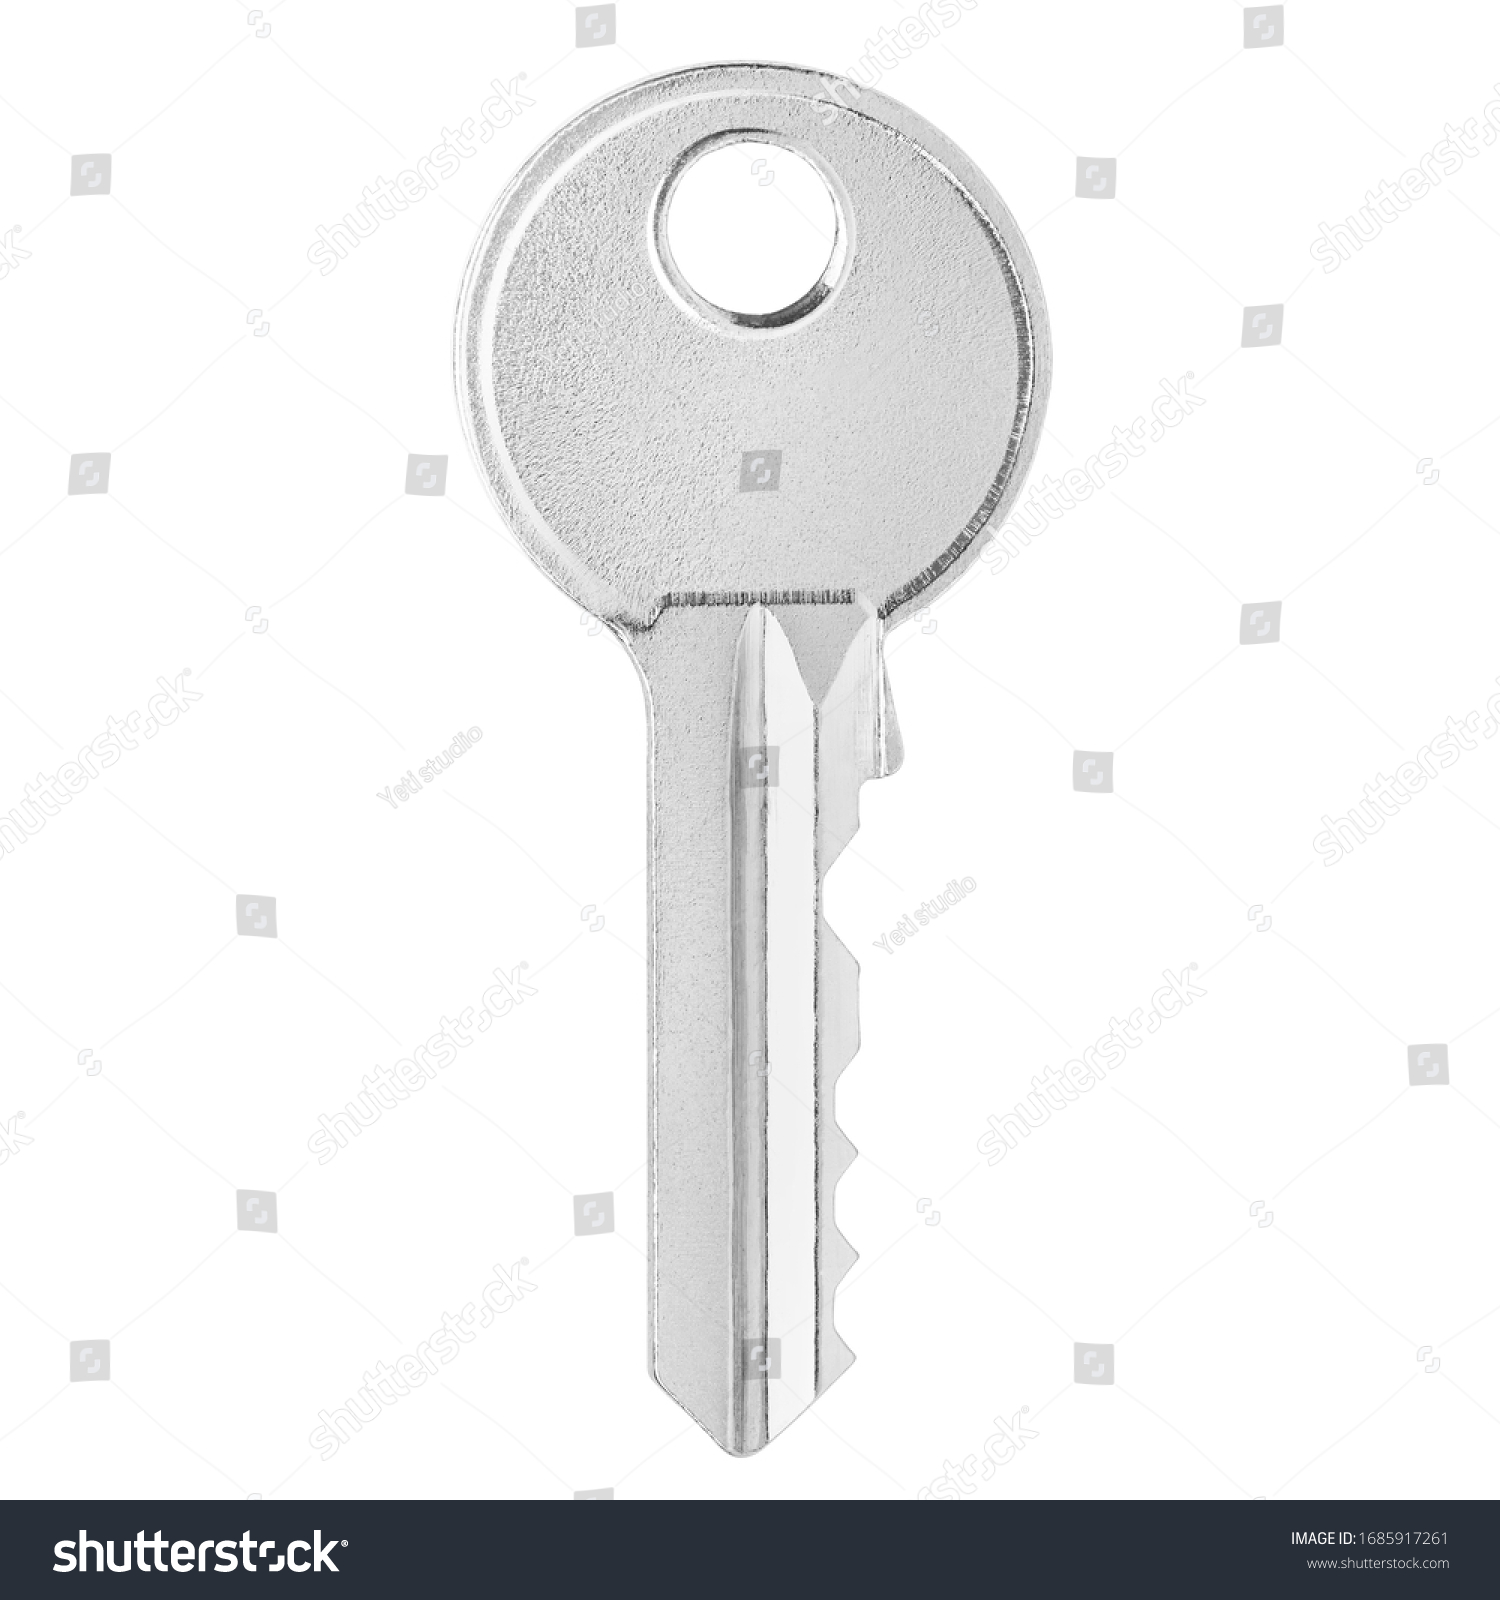 House key, isolated on white background #1685917261